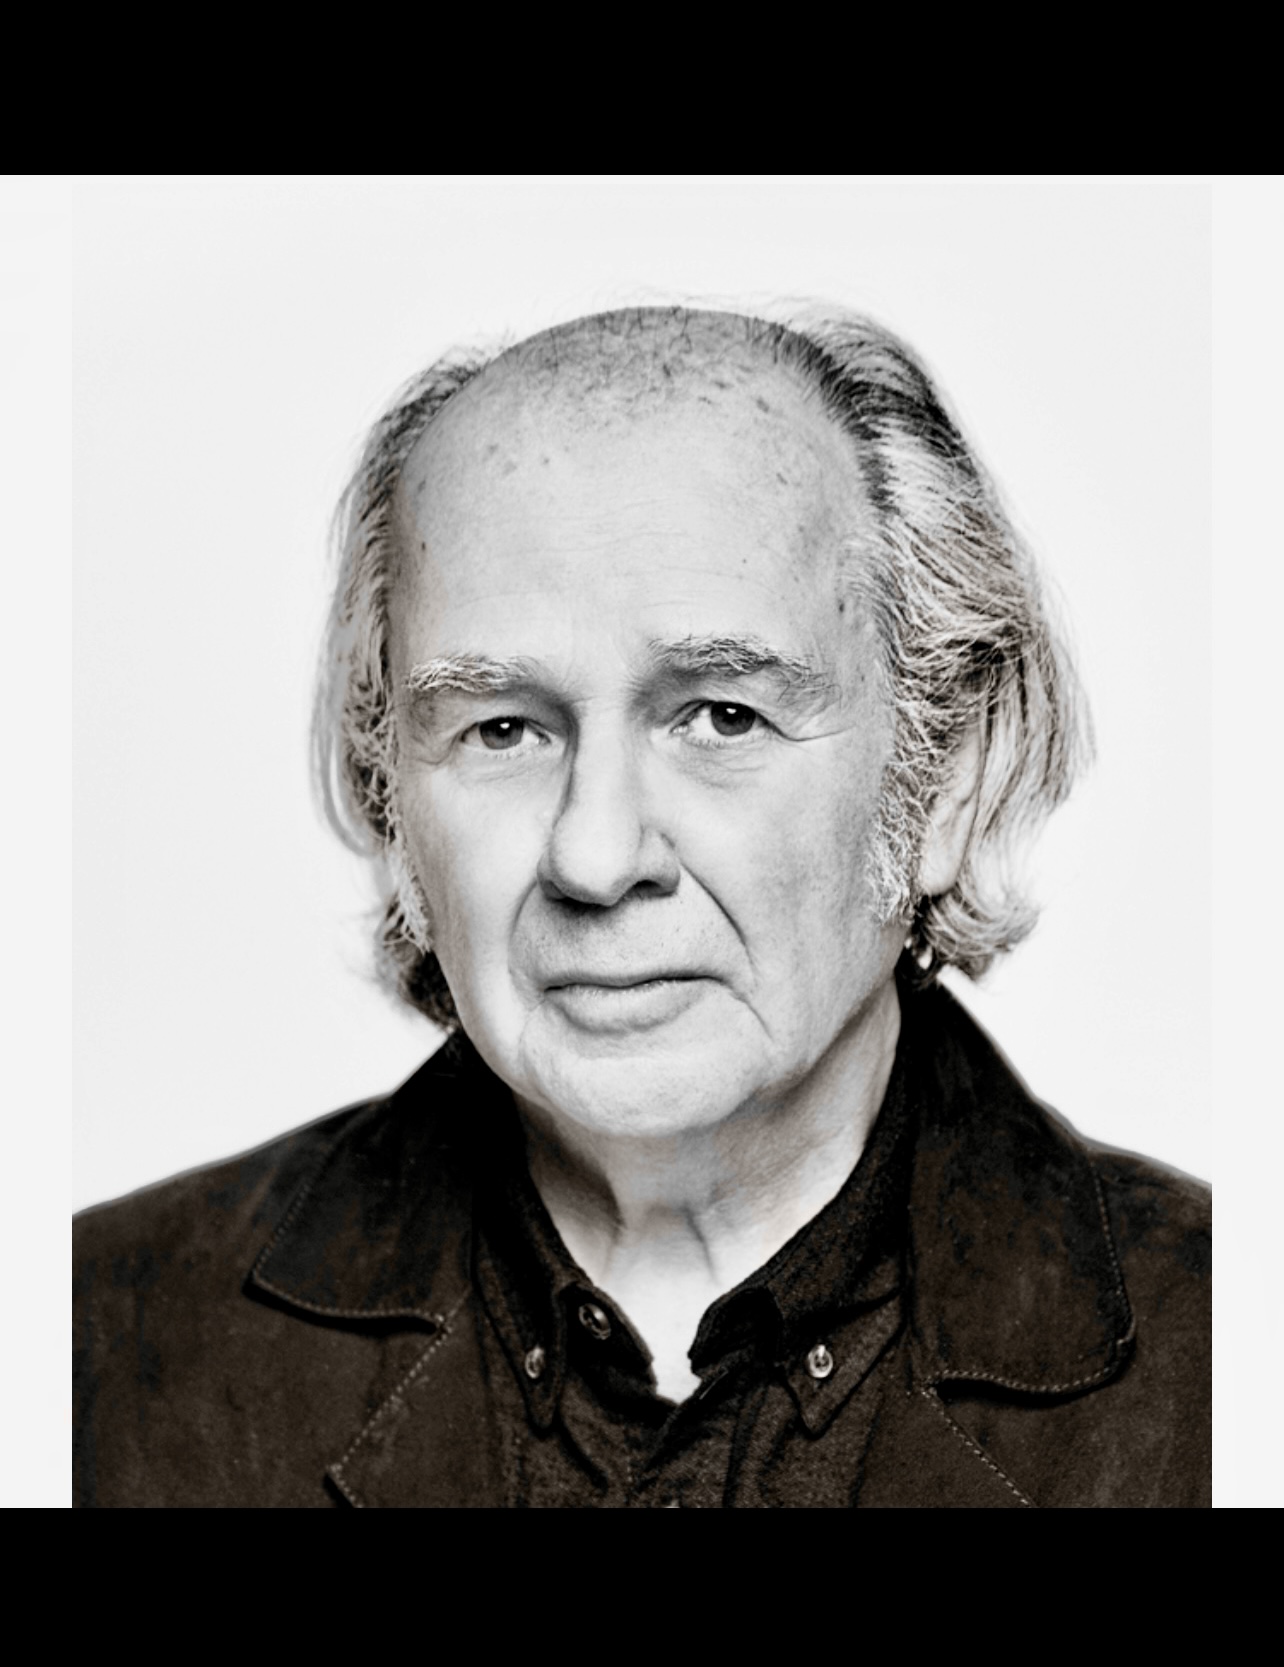 Une photo en noir et blanc de Pierre Ouellet, un homme plus âgé à l'expression mélancolique.